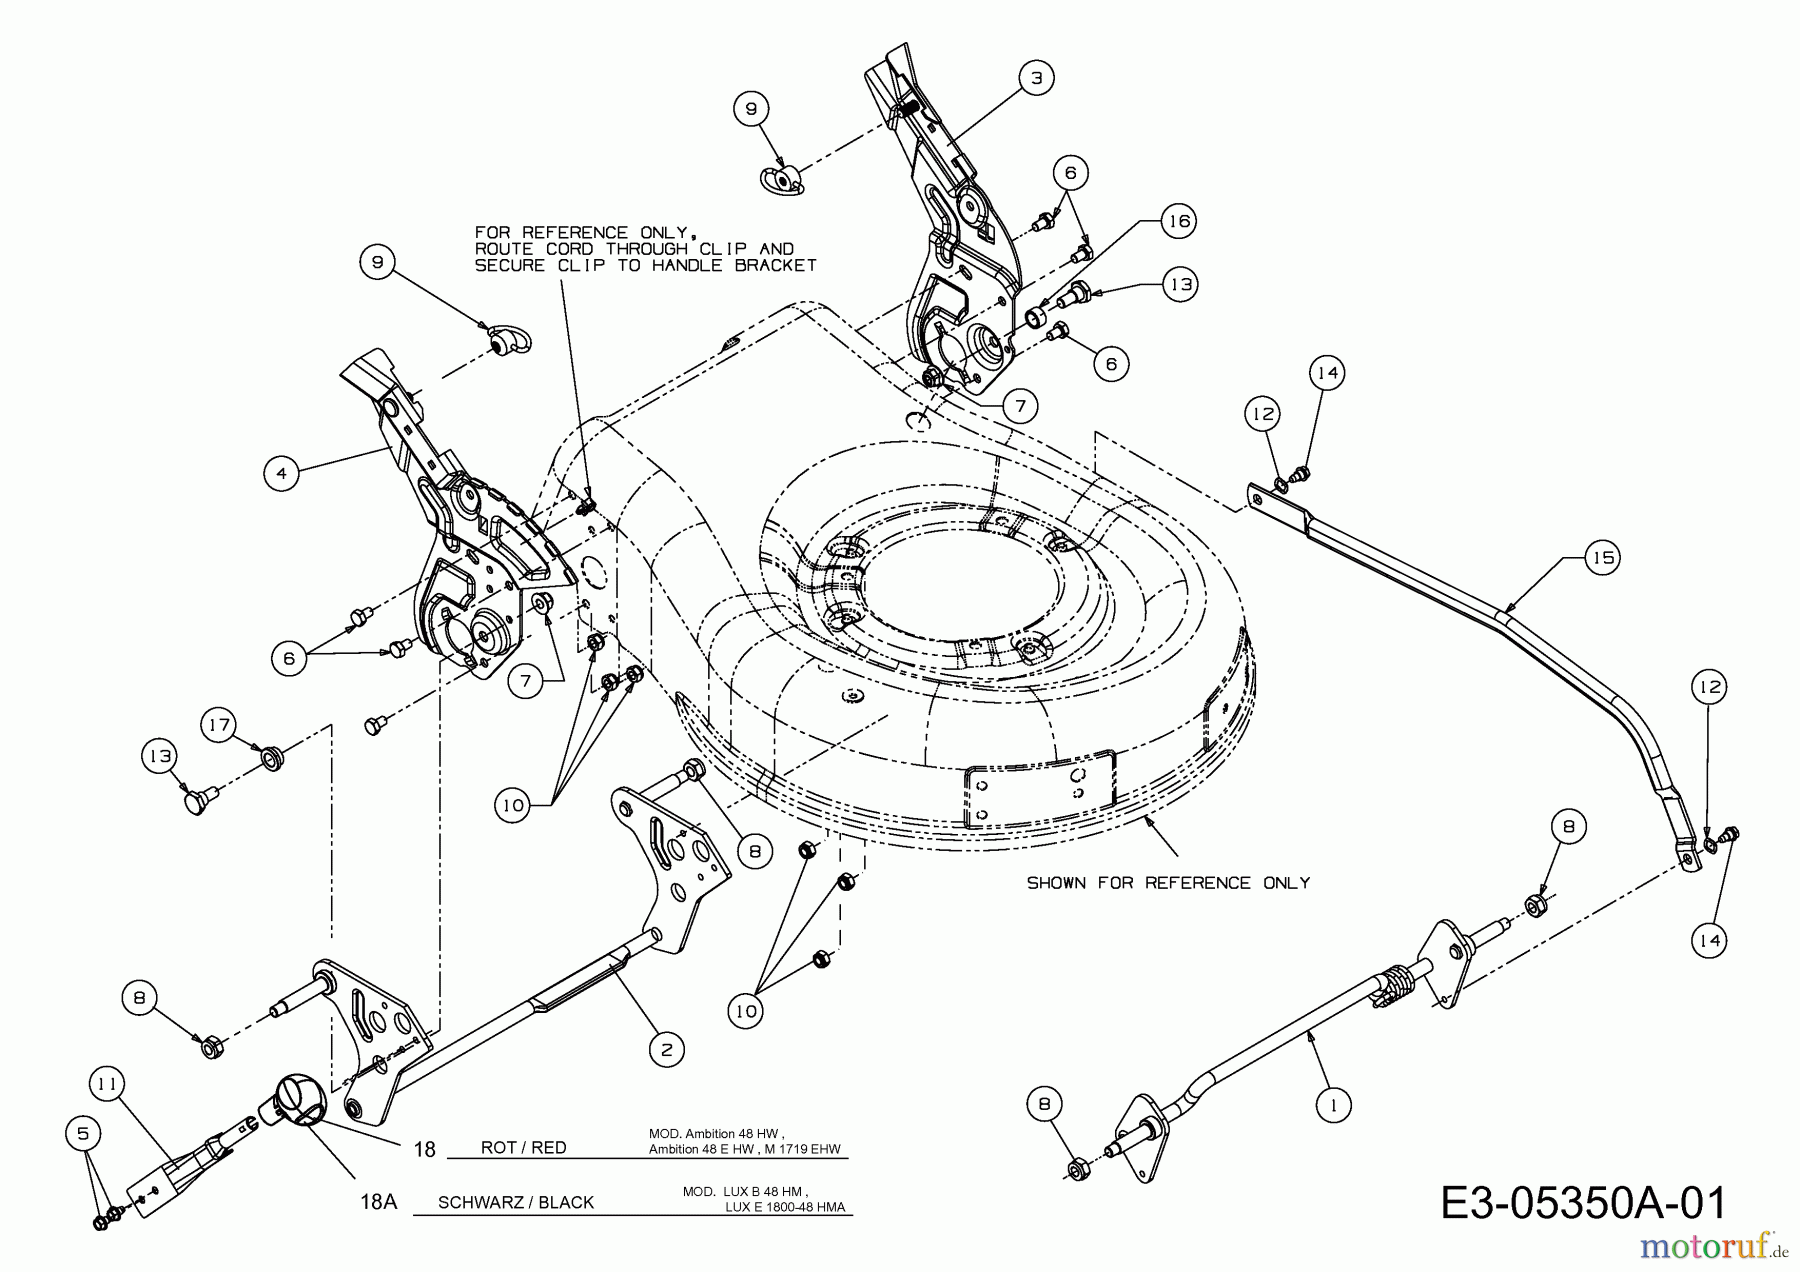  Lux Tools Motormäher B 48 HM 11C-128R694  (2013) Höhenverstellung